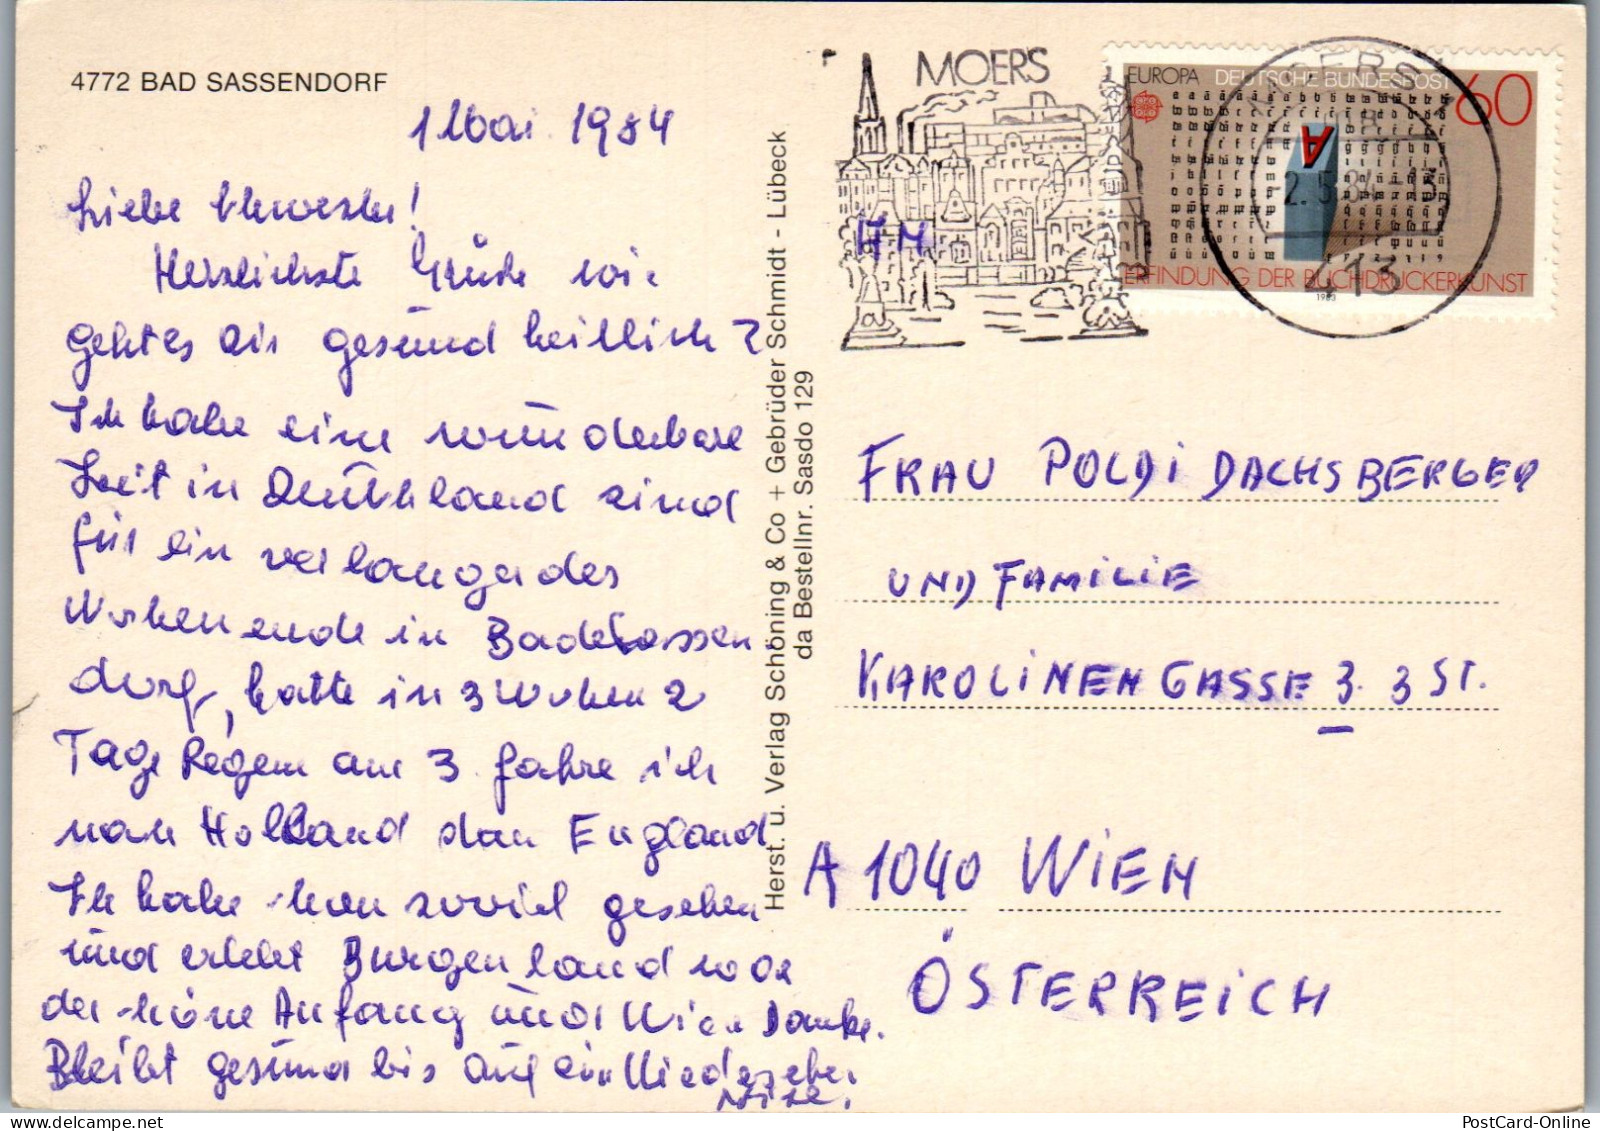 47901 - Deutschland - Bad Sassendorf , Schloß , Füßgängerzone , Plastik , Freibad , Gradierwerk , Mehrbildkarte - 1984 - Bad Sassendorf